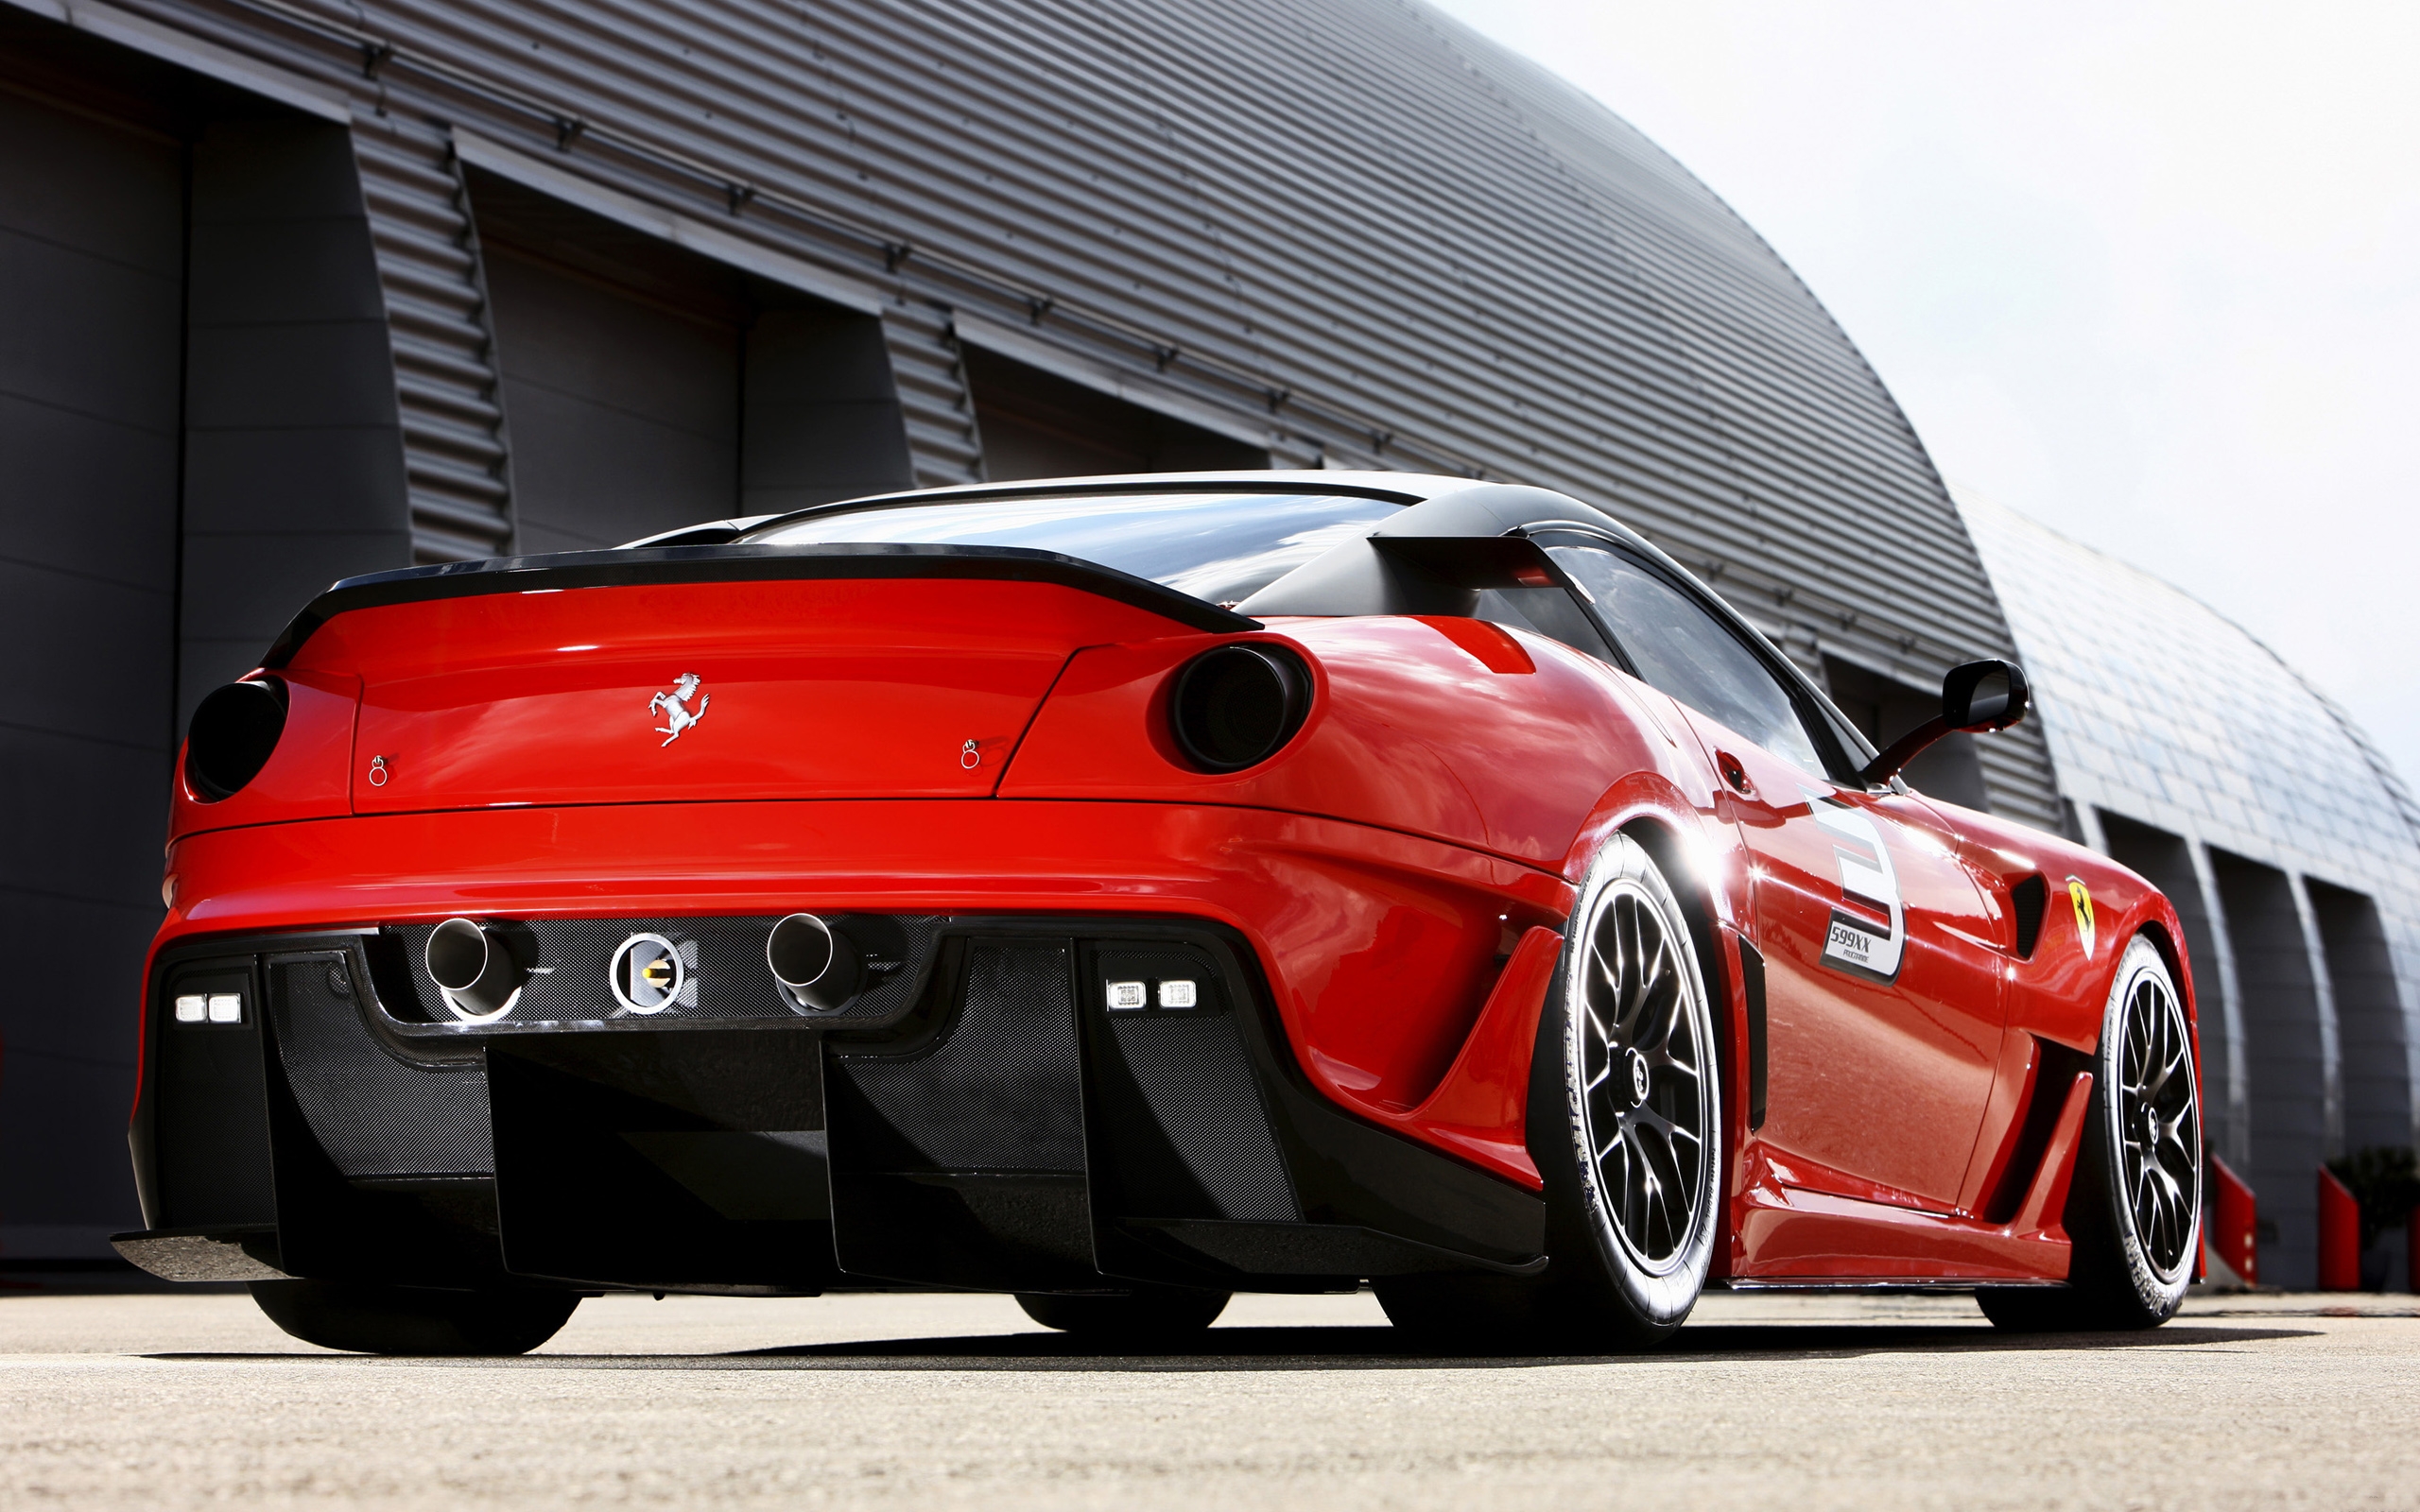 Download Wallpaper ferrari sports car red 599xx evo, 2560x1600